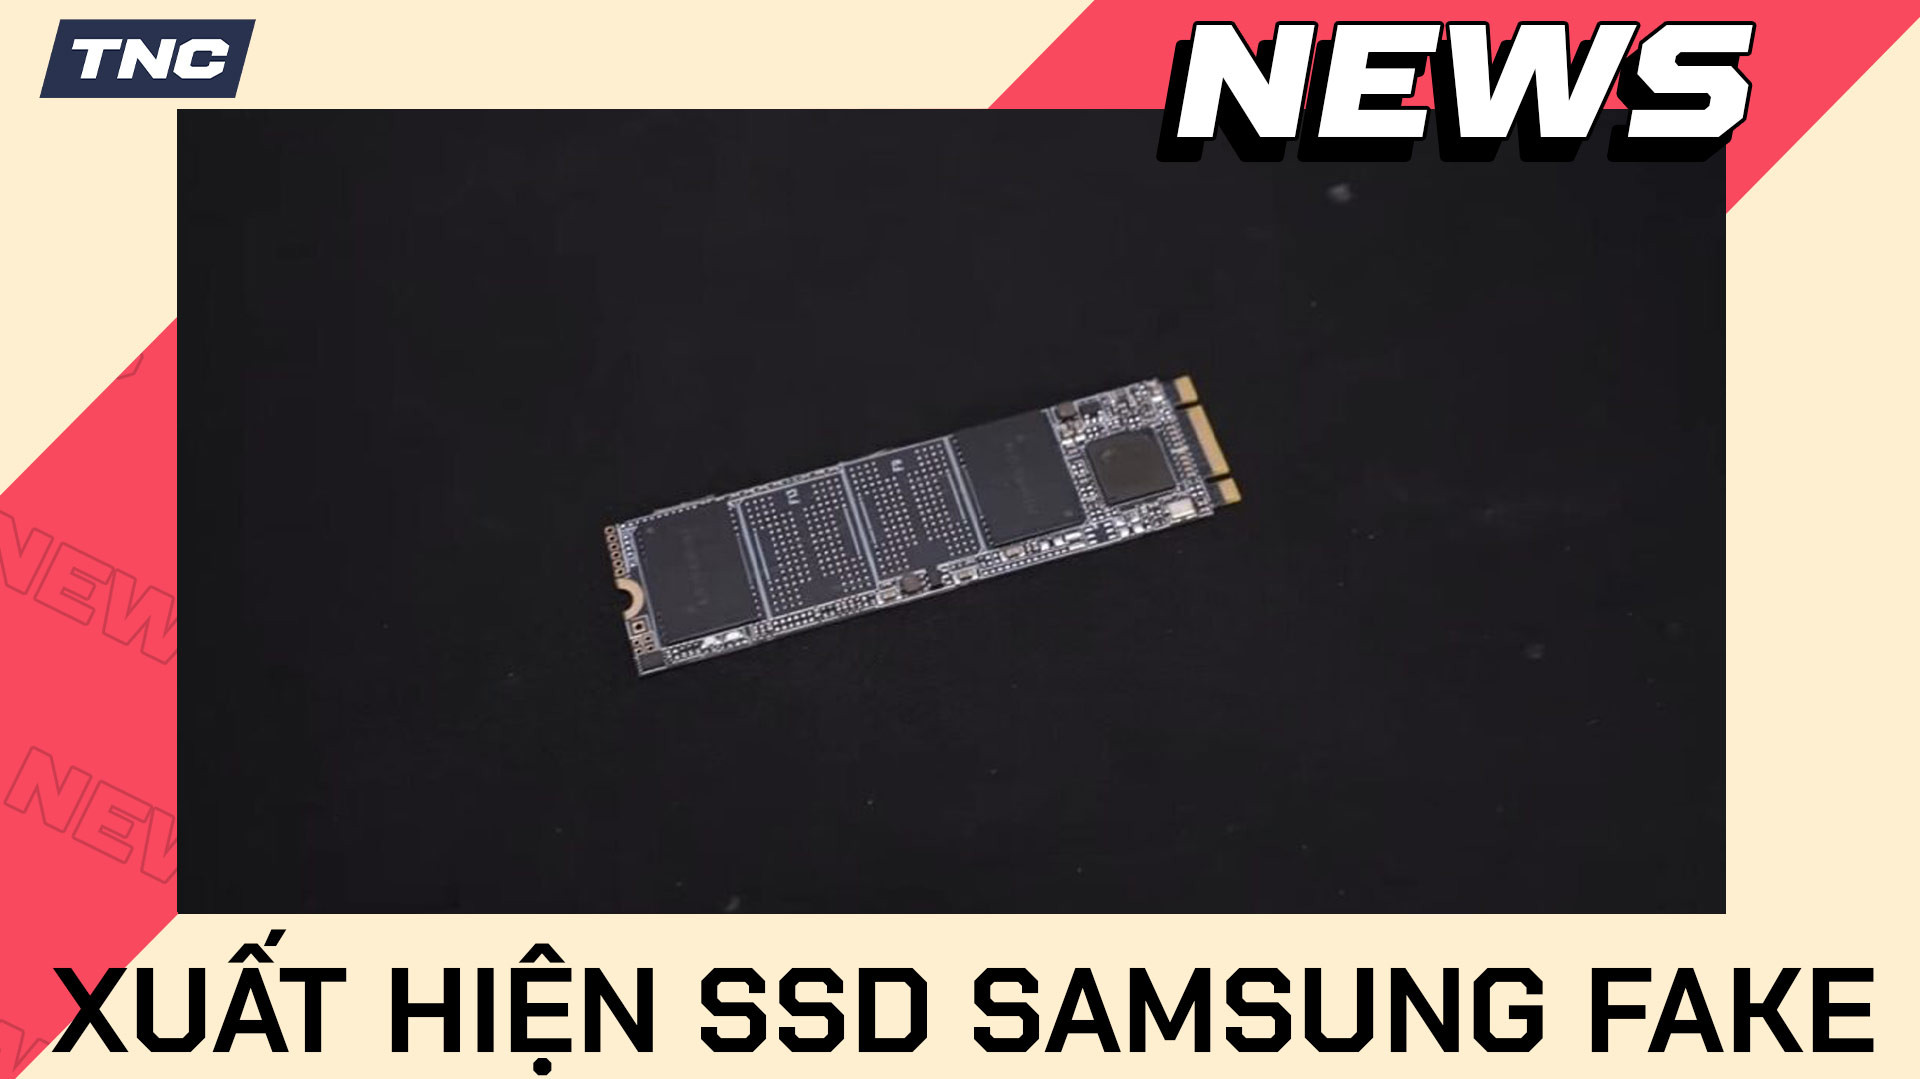 Xuất hiện SSD Samsung 980 và 990 Pro fake với hiệu năng còn cùi bắp hơn cả bút nhớ USB